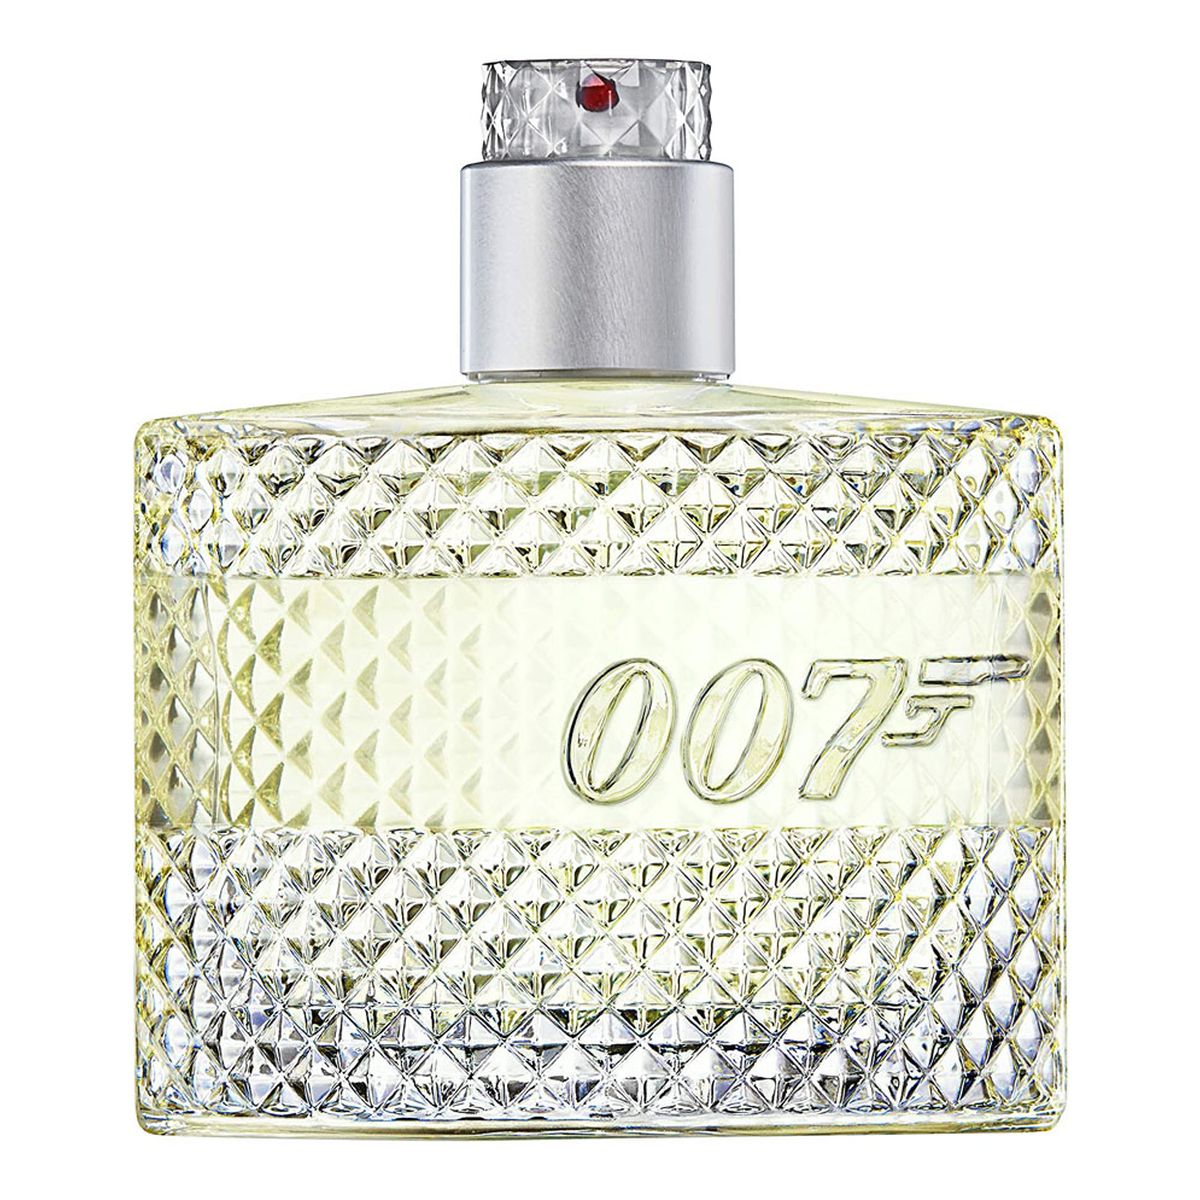 James Bond 007 007 Cologne Woda kolońska spray tester 50ml